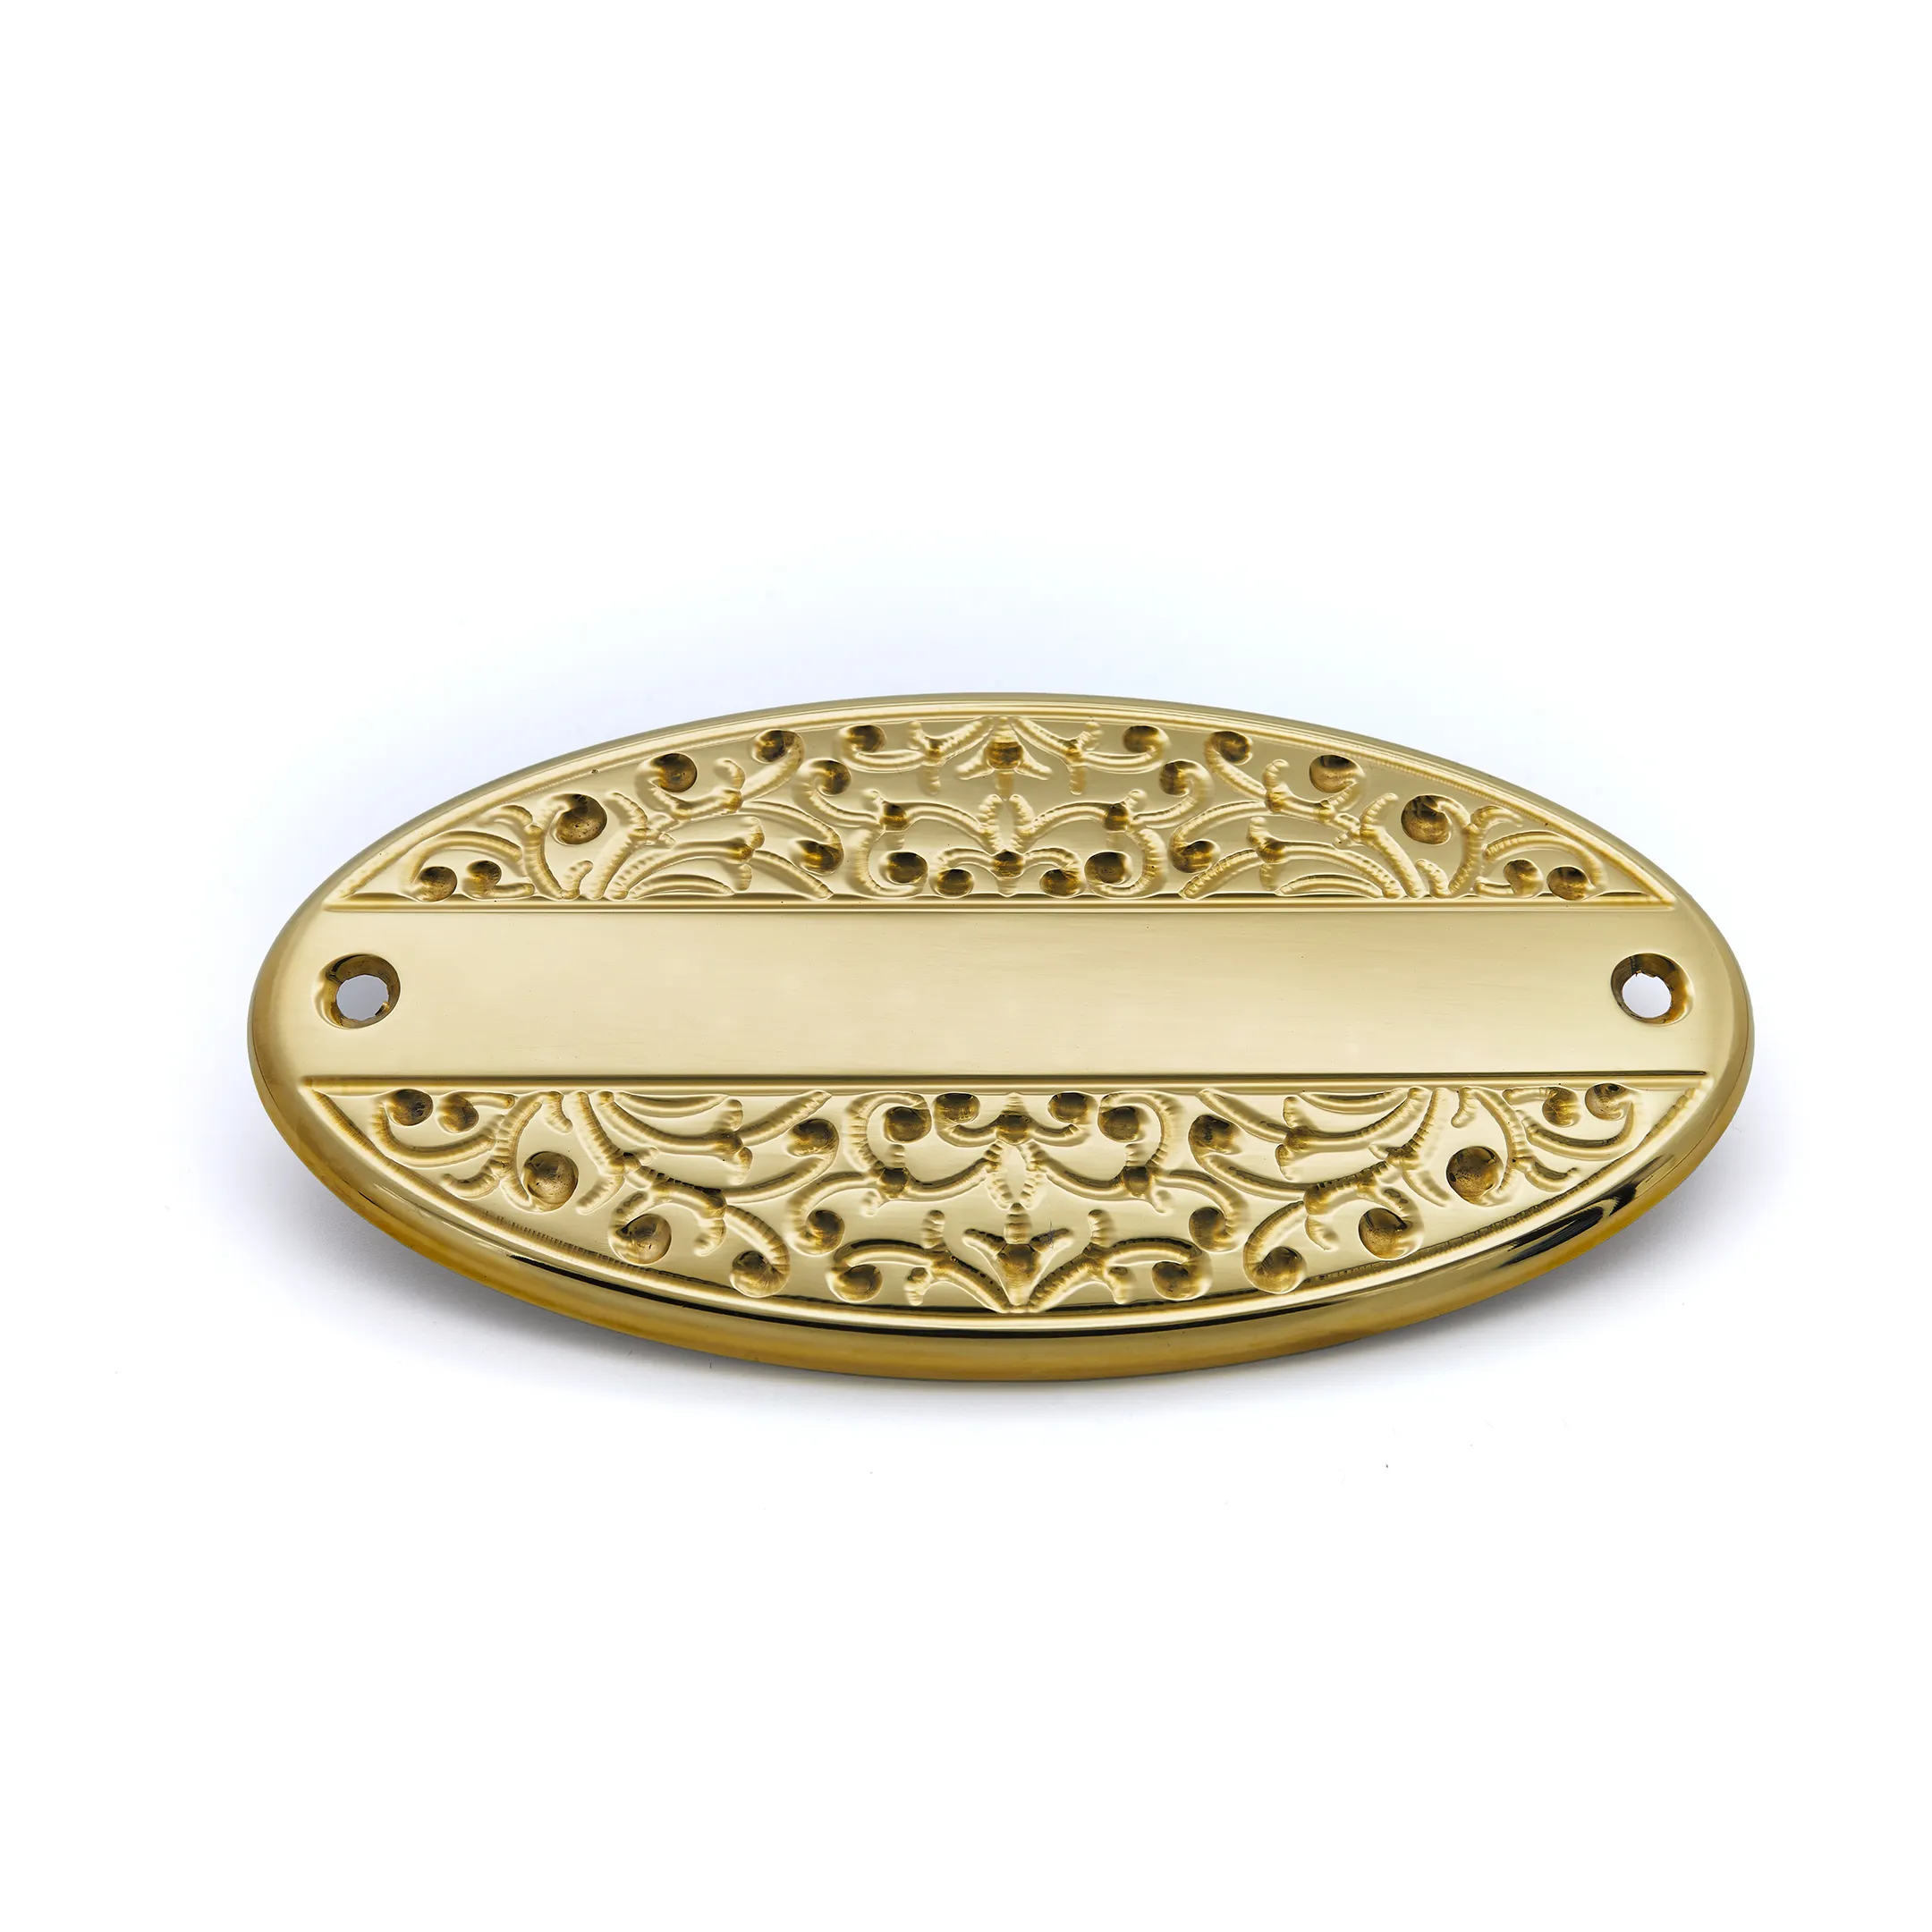 Premium artigianale Made in Italy Asmara ovale in ottone lucido porta targhetta targa targa in metallo decorazioni per la casa